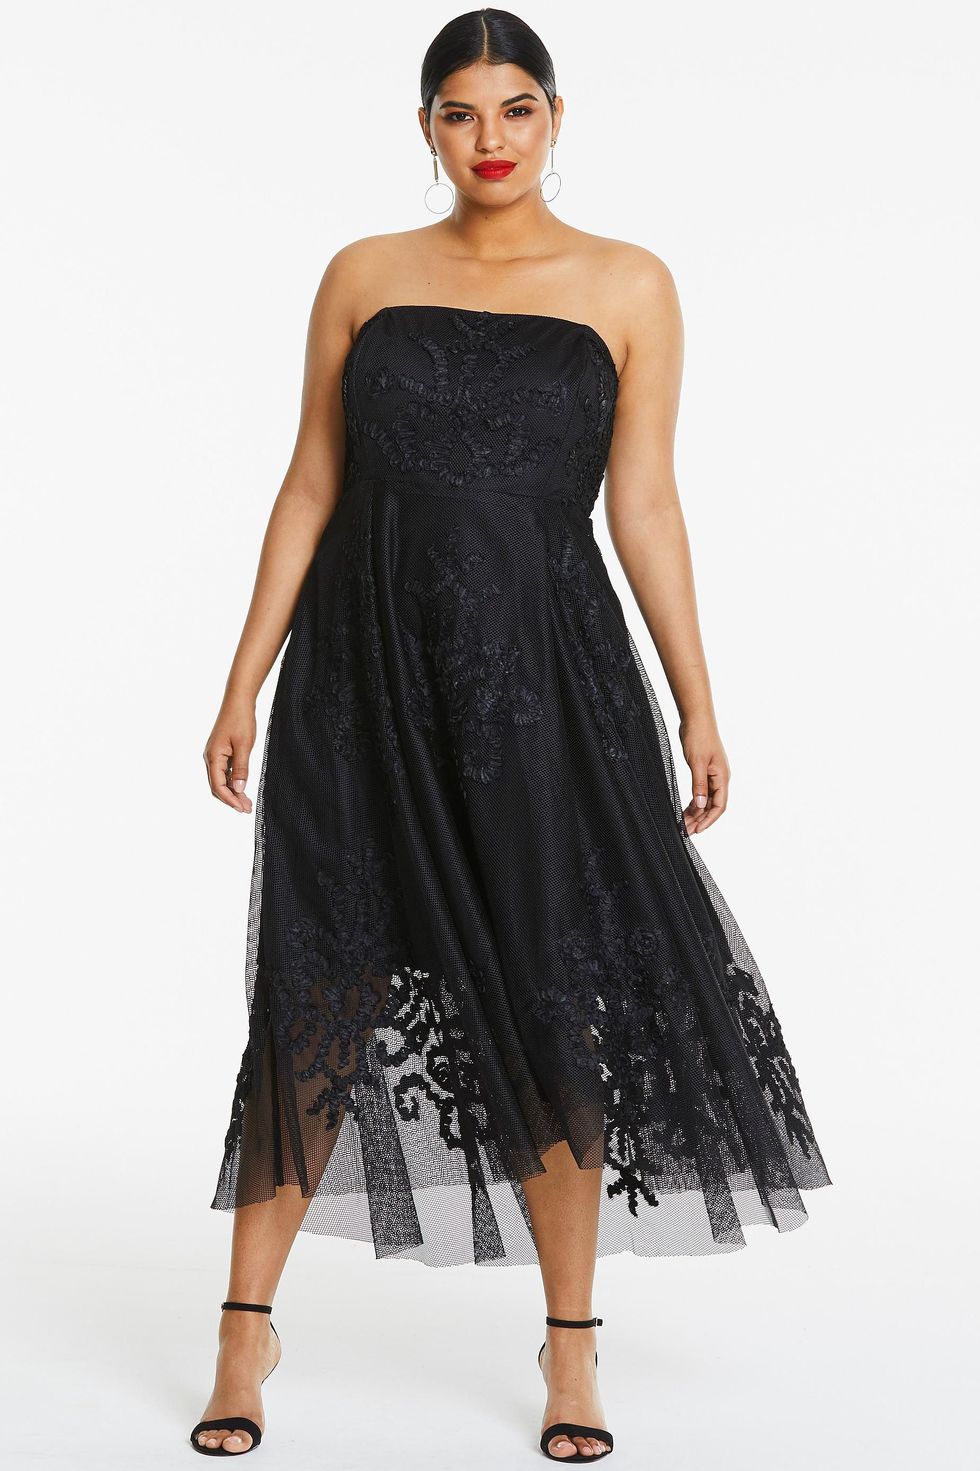 23 Best Black Prom Dresses 2022 - Dark Formal Dresses for Prom